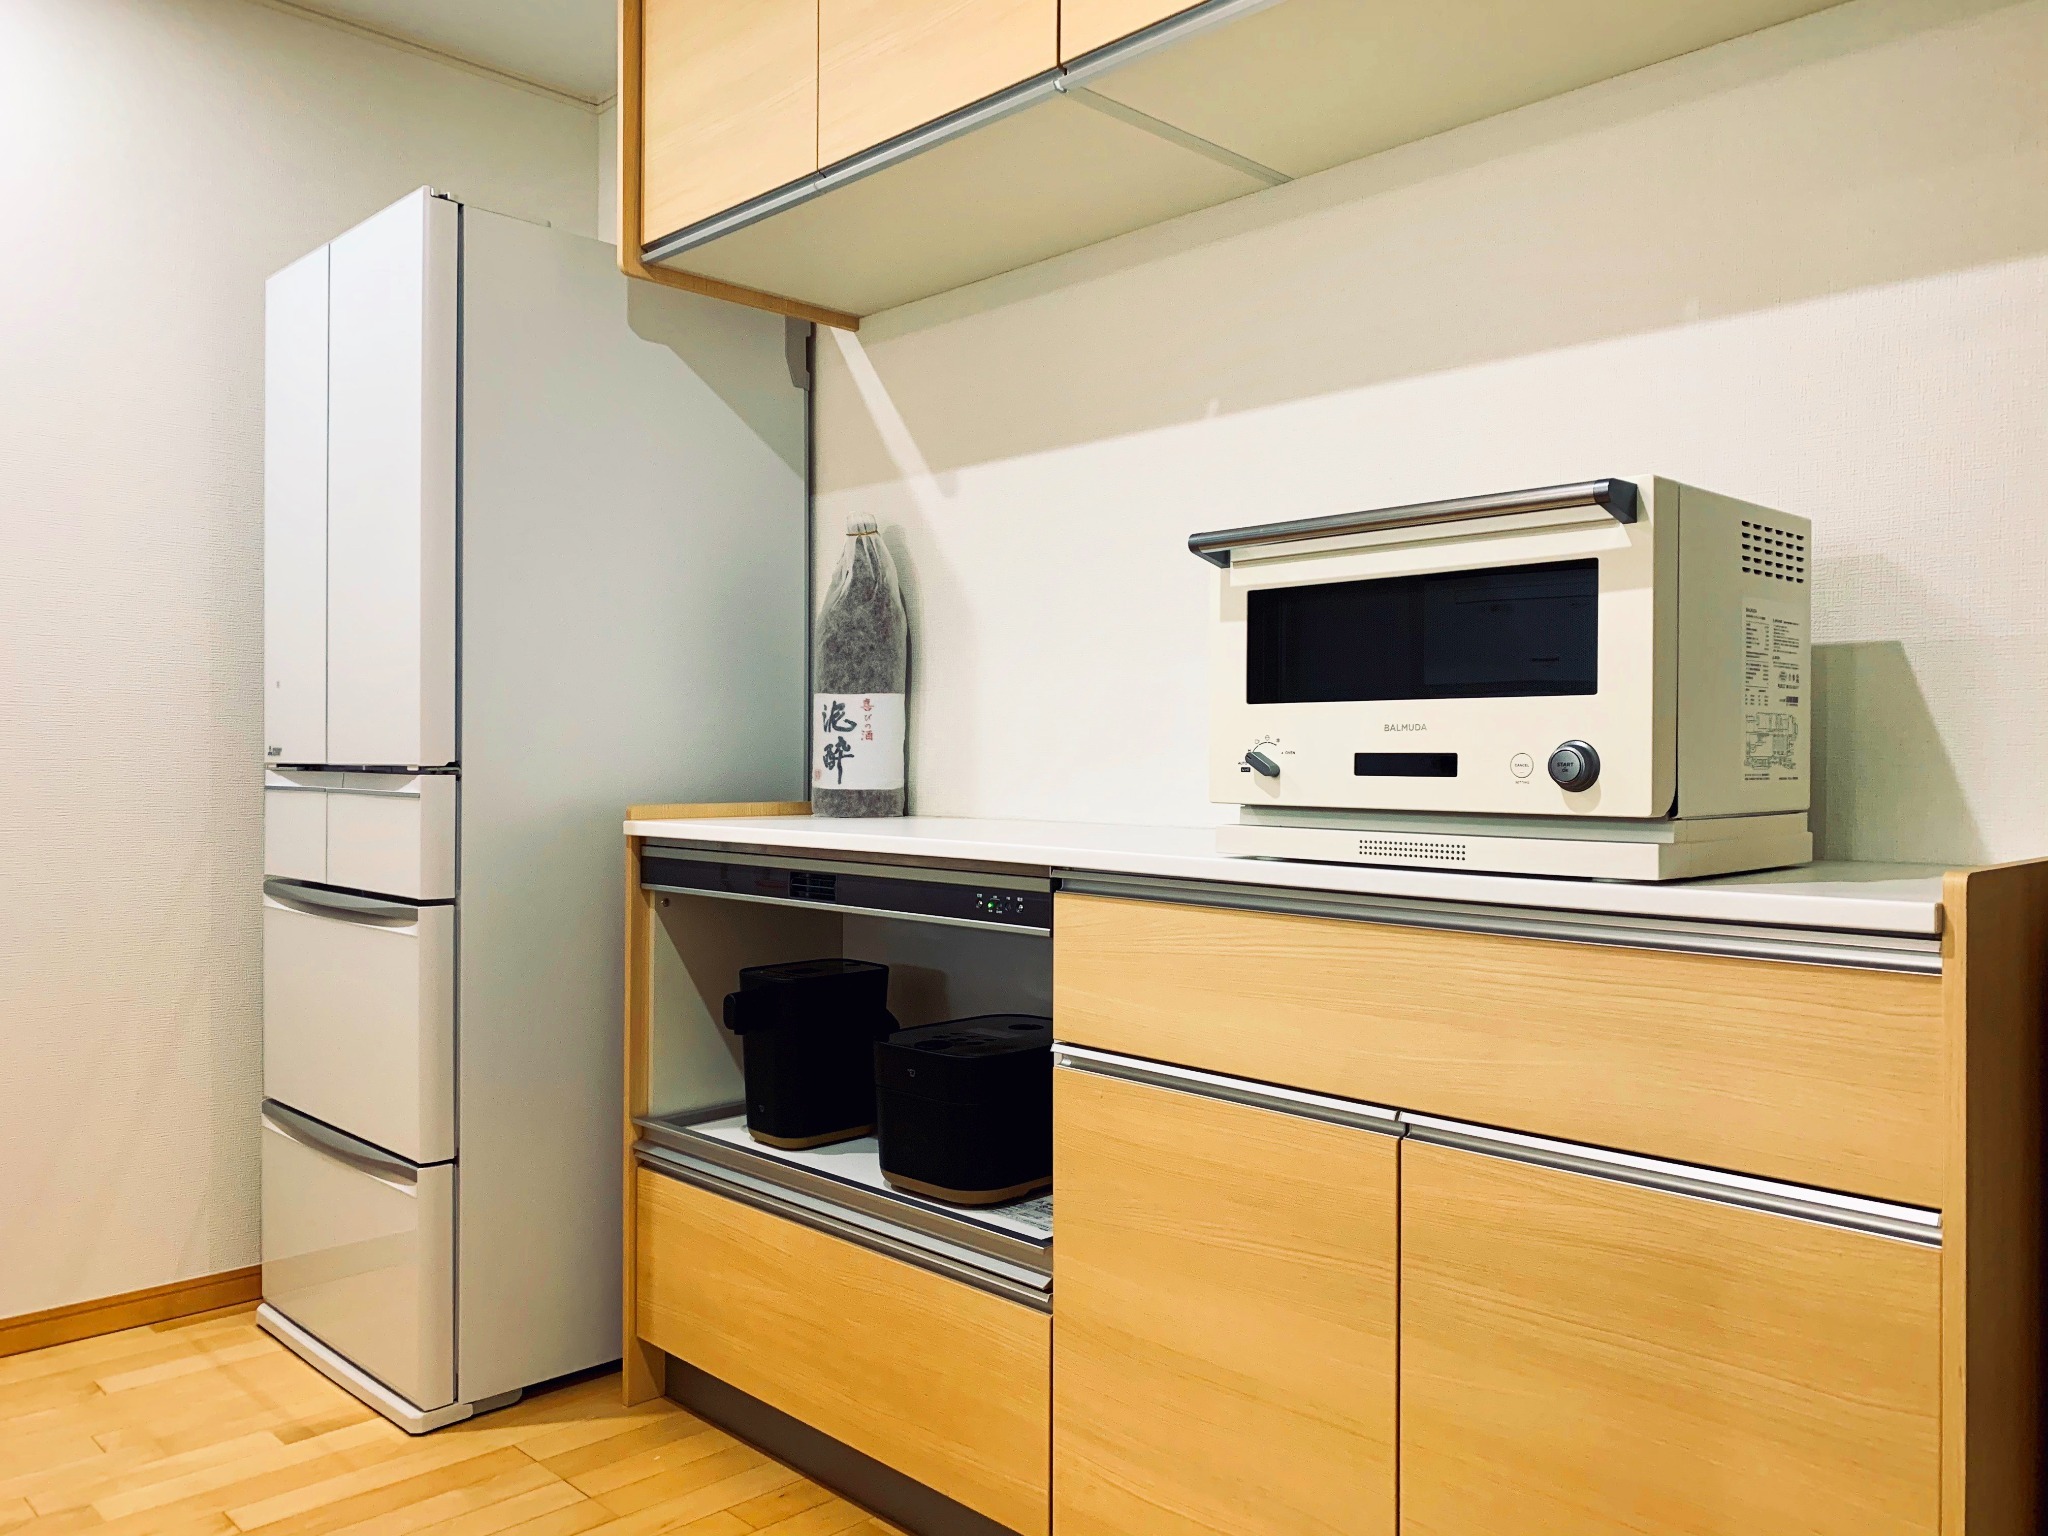 2階 キッチン 冷蔵庫、電子レンジ、電気ポット、炊飯器をご自由にお使いいただけます。